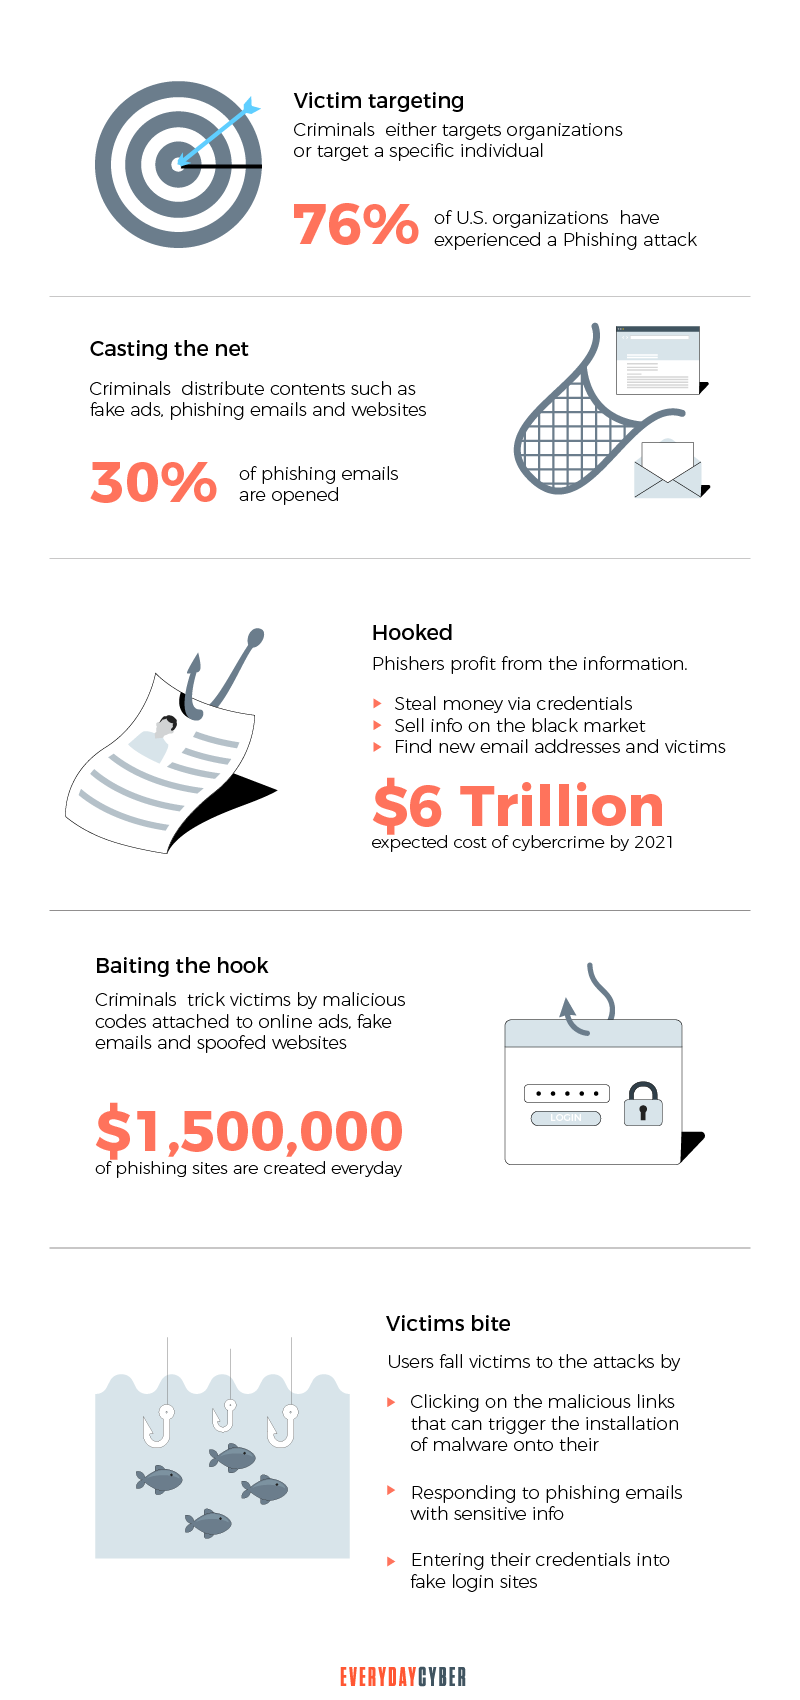 Key Statistics on Phishing Attacks